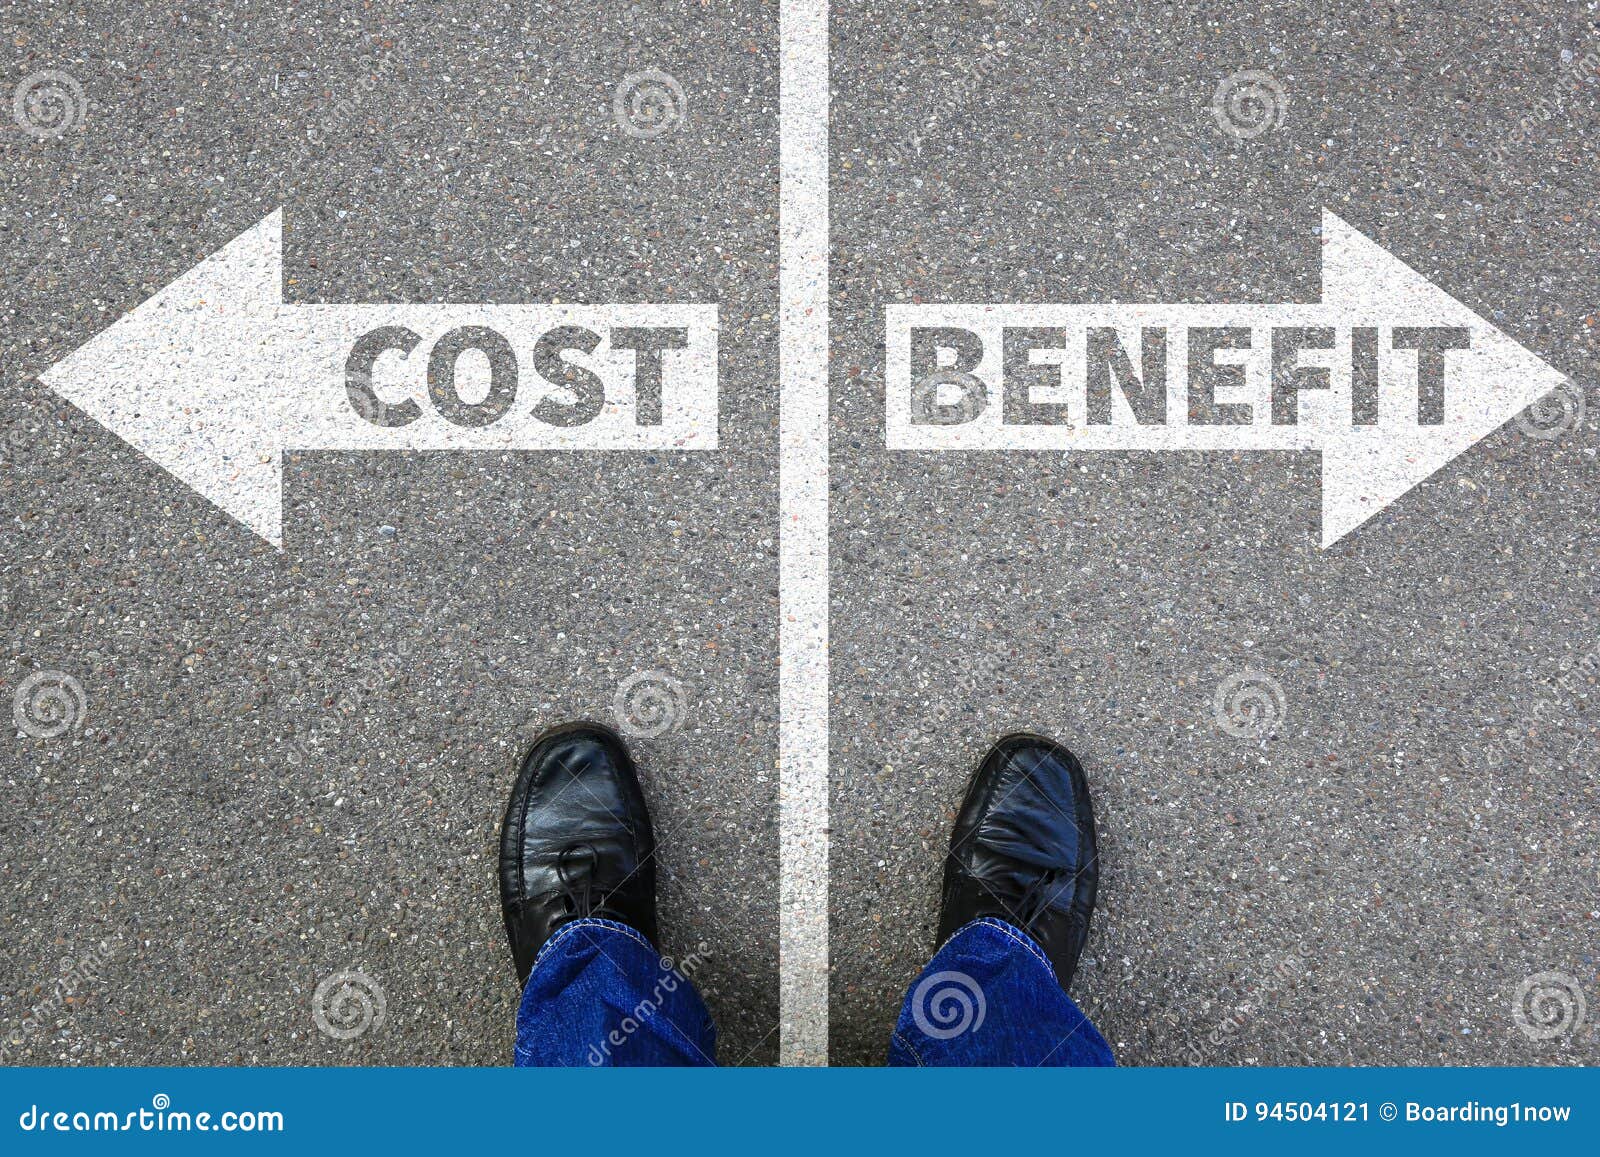 cost benefit loss profit finances financial success company business concept